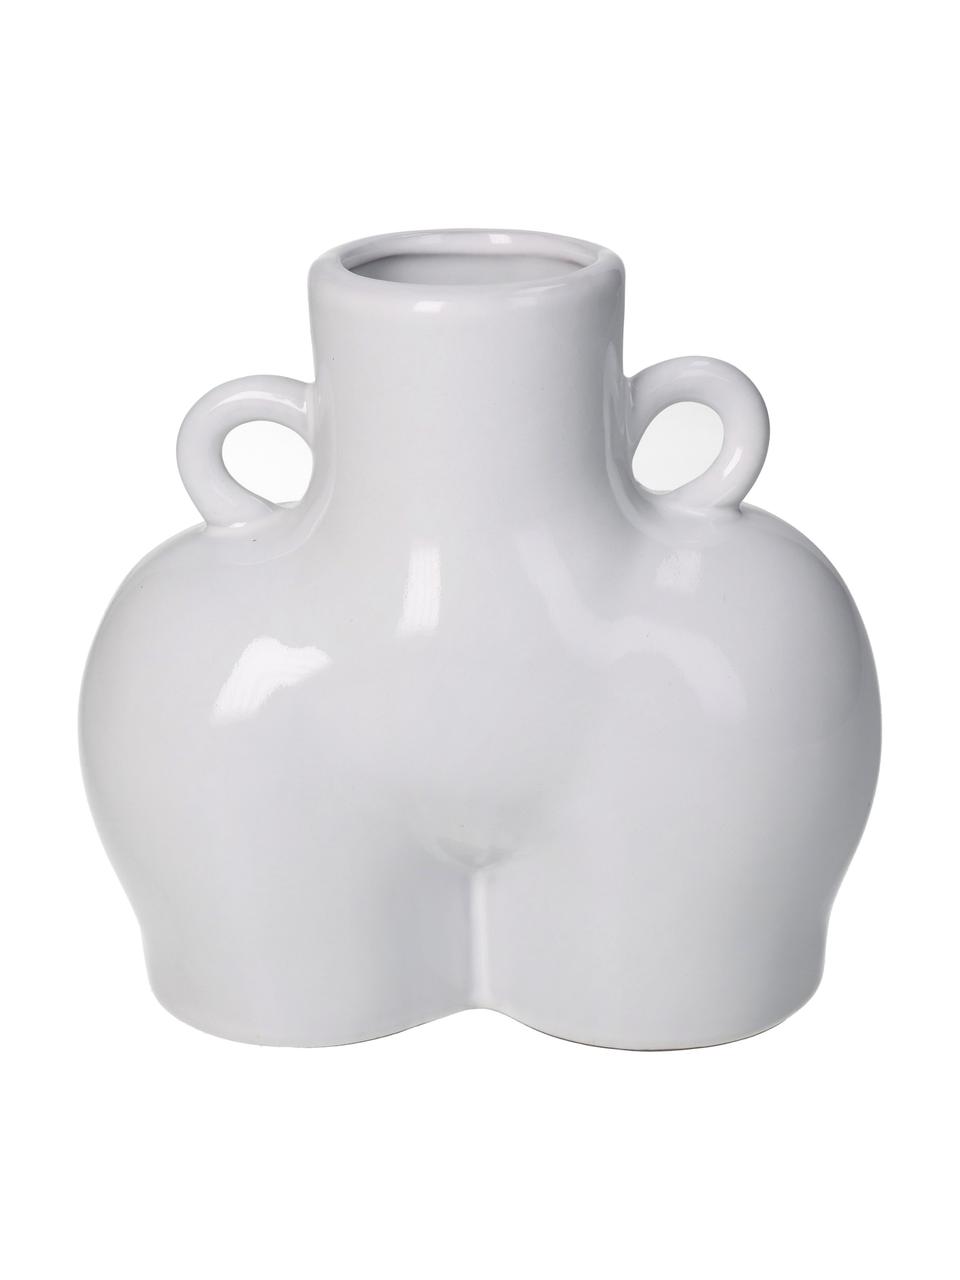 Design-Vase Body aus Steingut, Steingut, Weiß, B 14 x H 14 cm